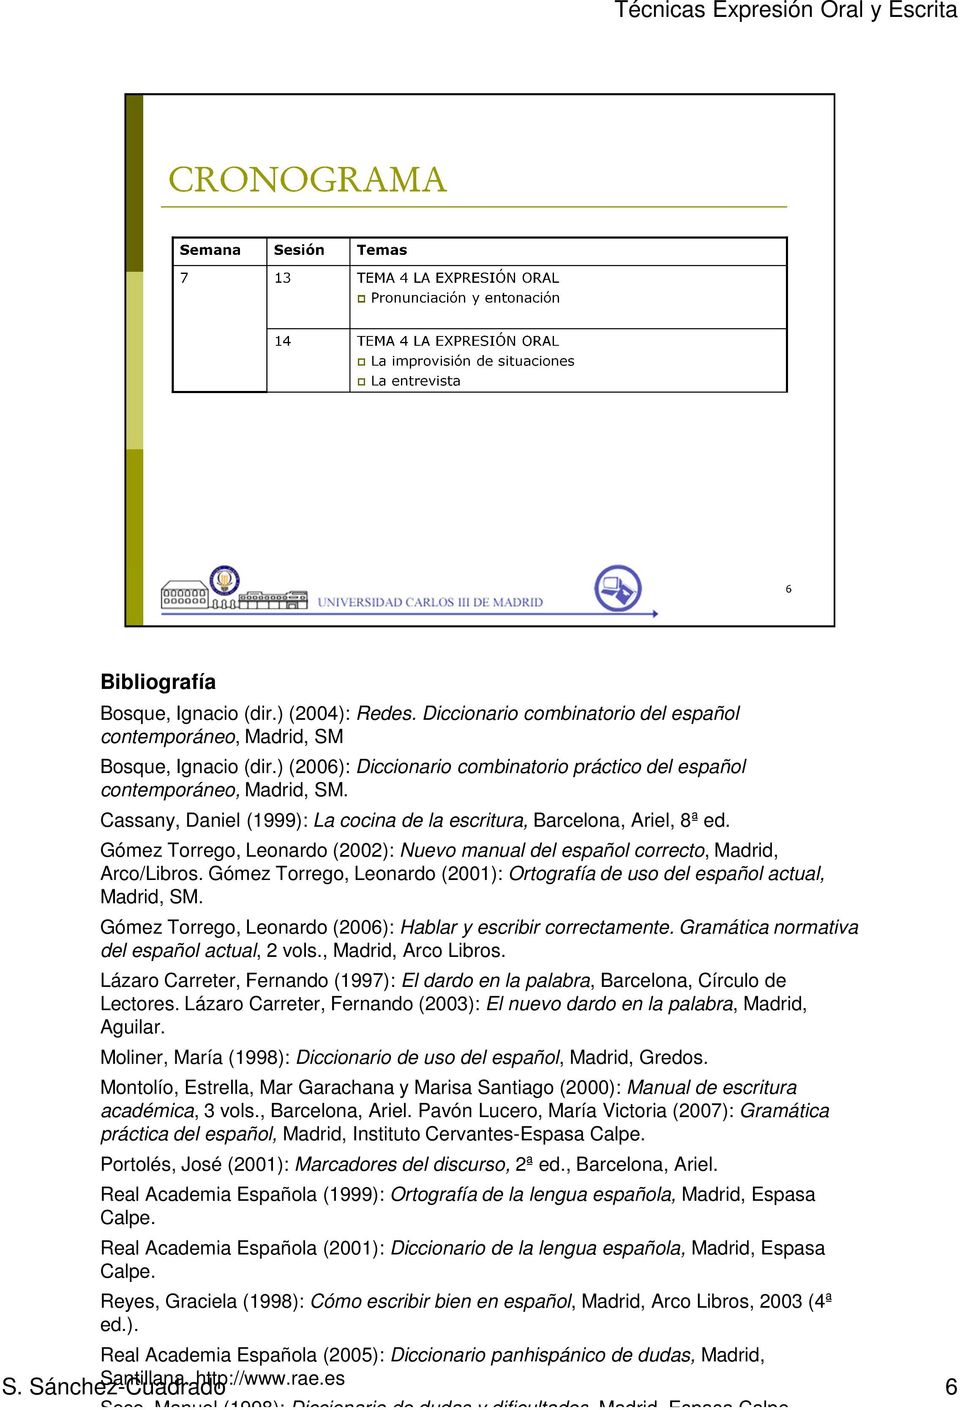 Gómez Torrego, Leonardo (2002): Nuevo manual del español correcto, Madrid, Arco/Libros. Gómez Torrego, Leonardo (2001): Ortografía de uso del español actual, Madrid, SM.